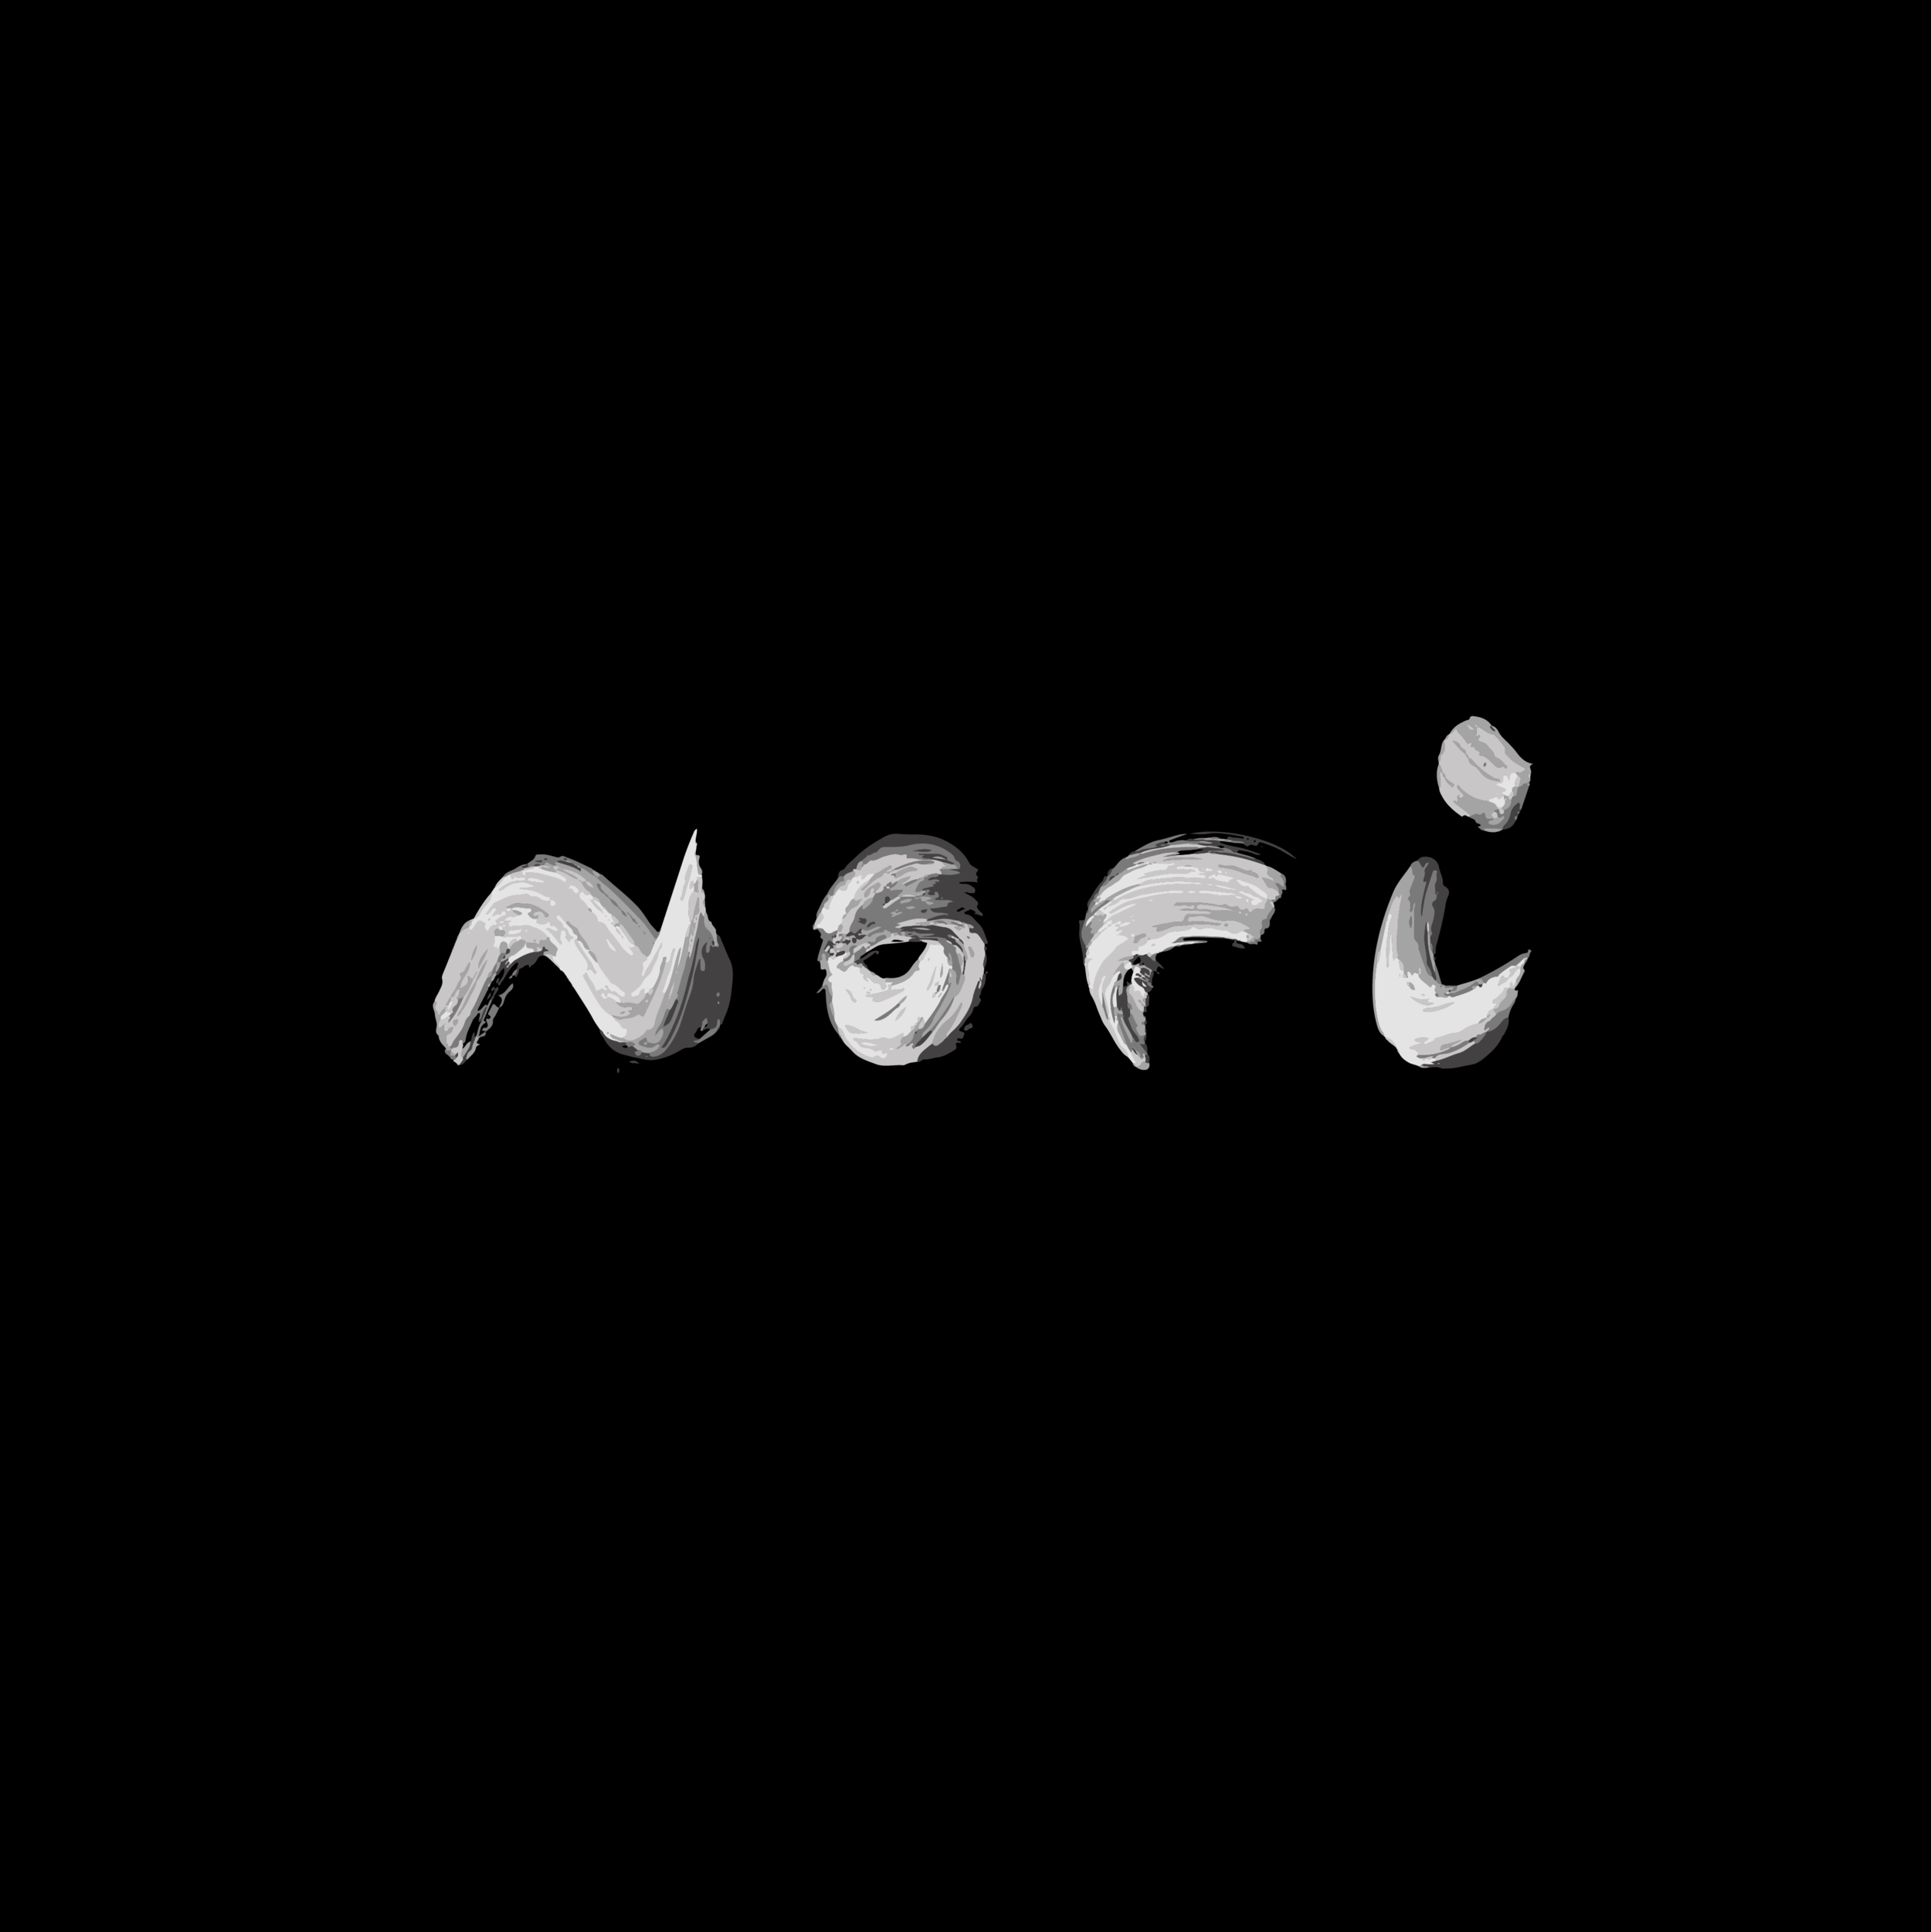 181026-MasterLogotype_Nori Logotype Negative copy.png